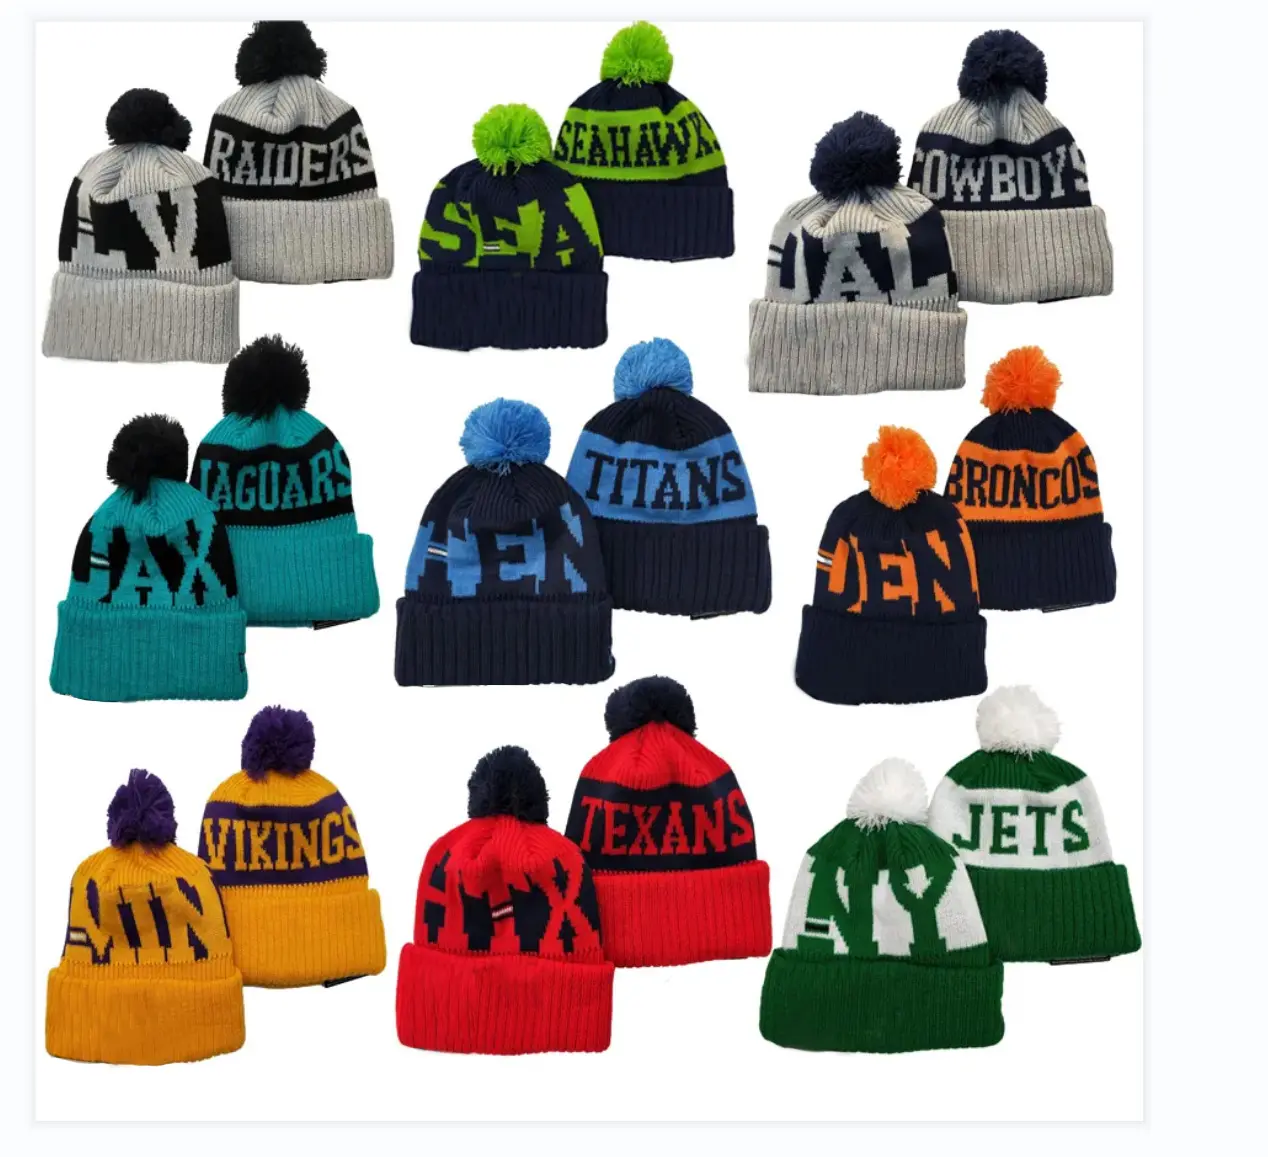 Gorros quentes para o inverno, chapéus esportivos de futebol americano para todas as equipes do clube, gorros para uso em vendas